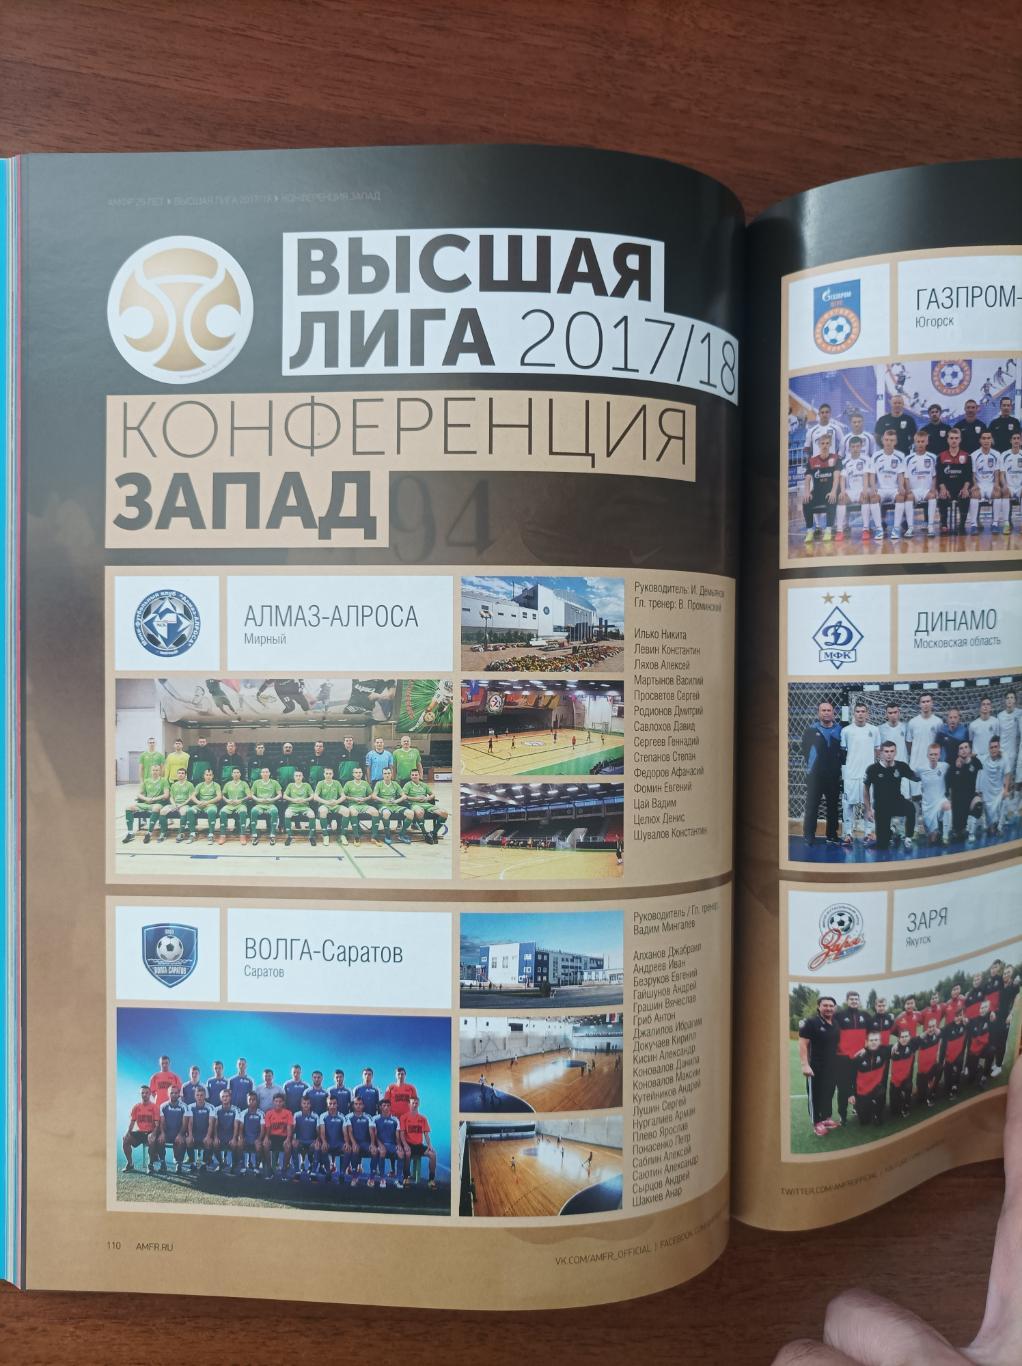 Мини-футбол в России 2017/18. 25 лет Российскому мини-футболу 2